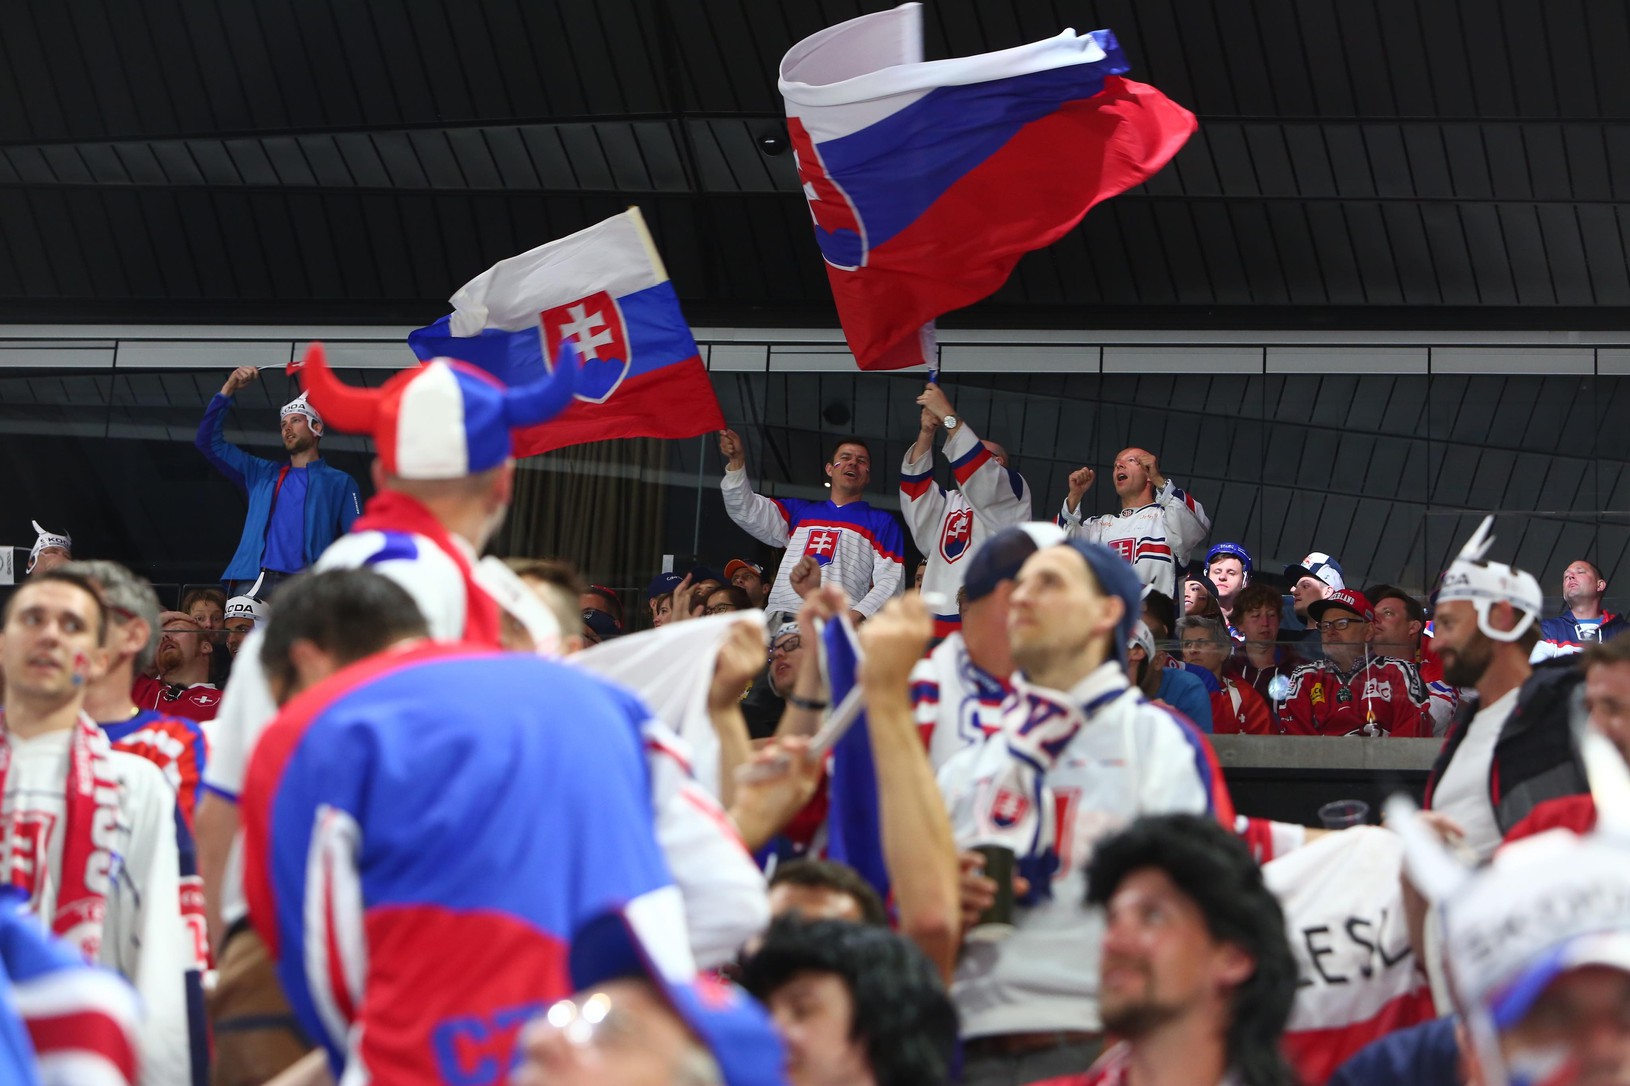 Slovenskí fanúšikovia počas zápasu